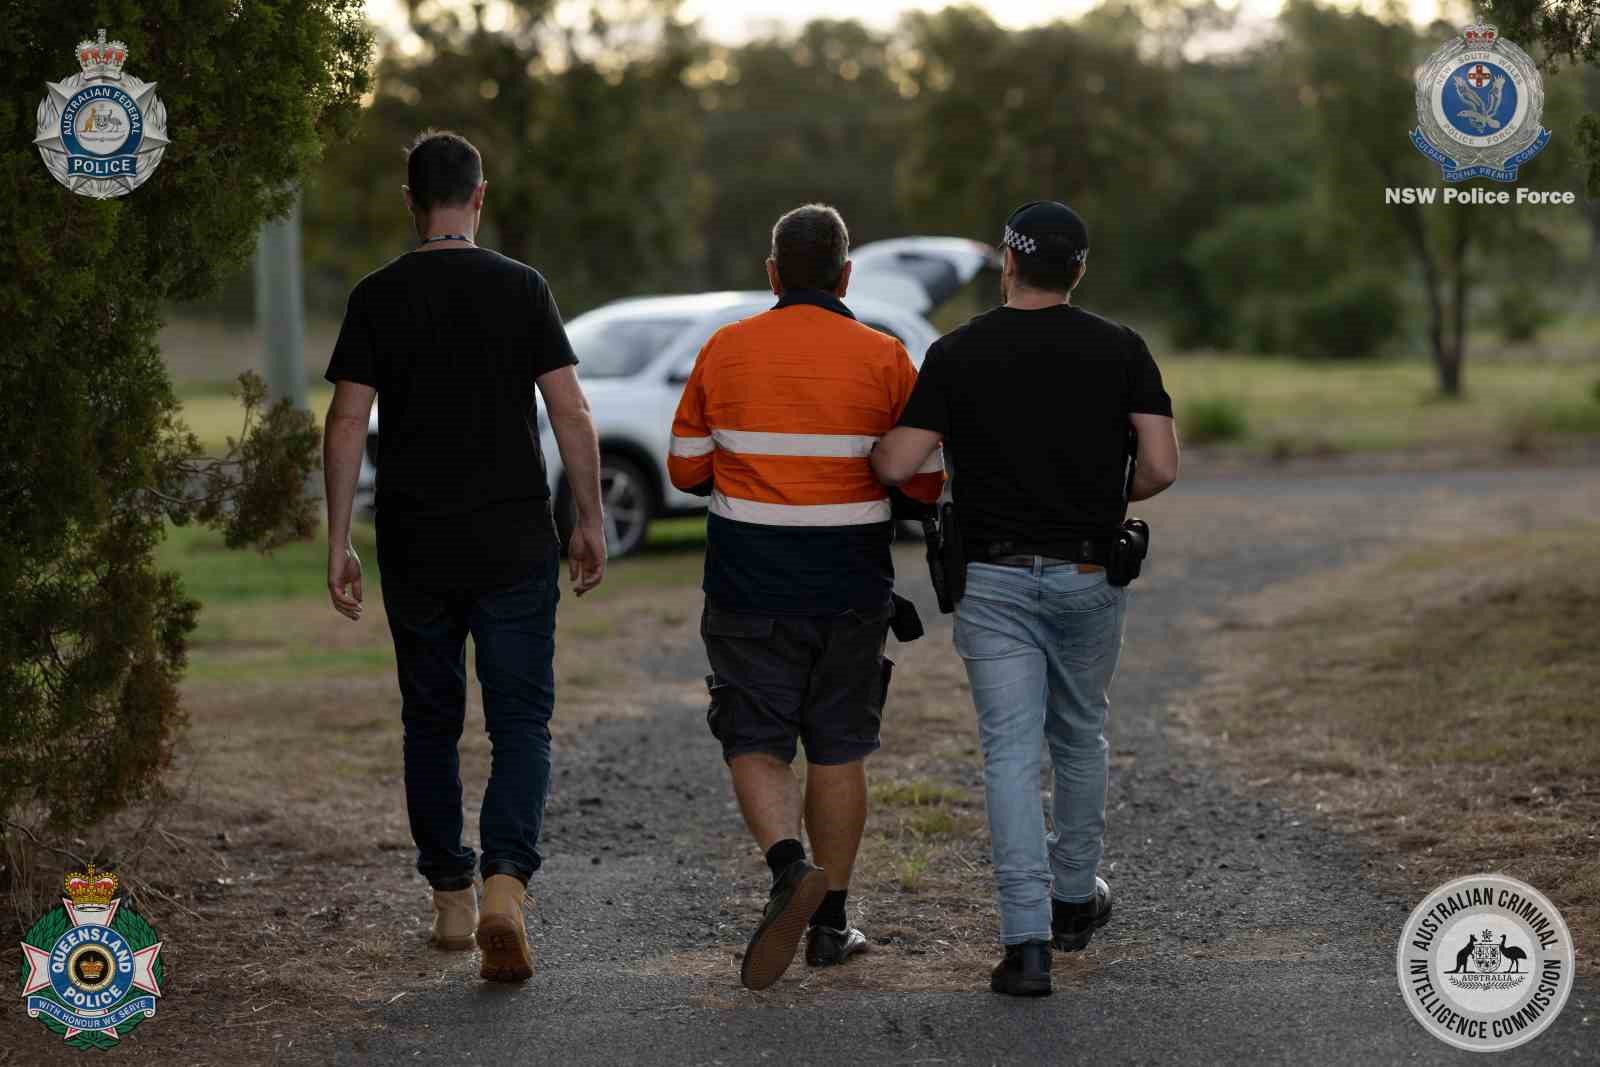 Avustralya’da kargo uçağında 52 kilogram metamfetamin bulundu